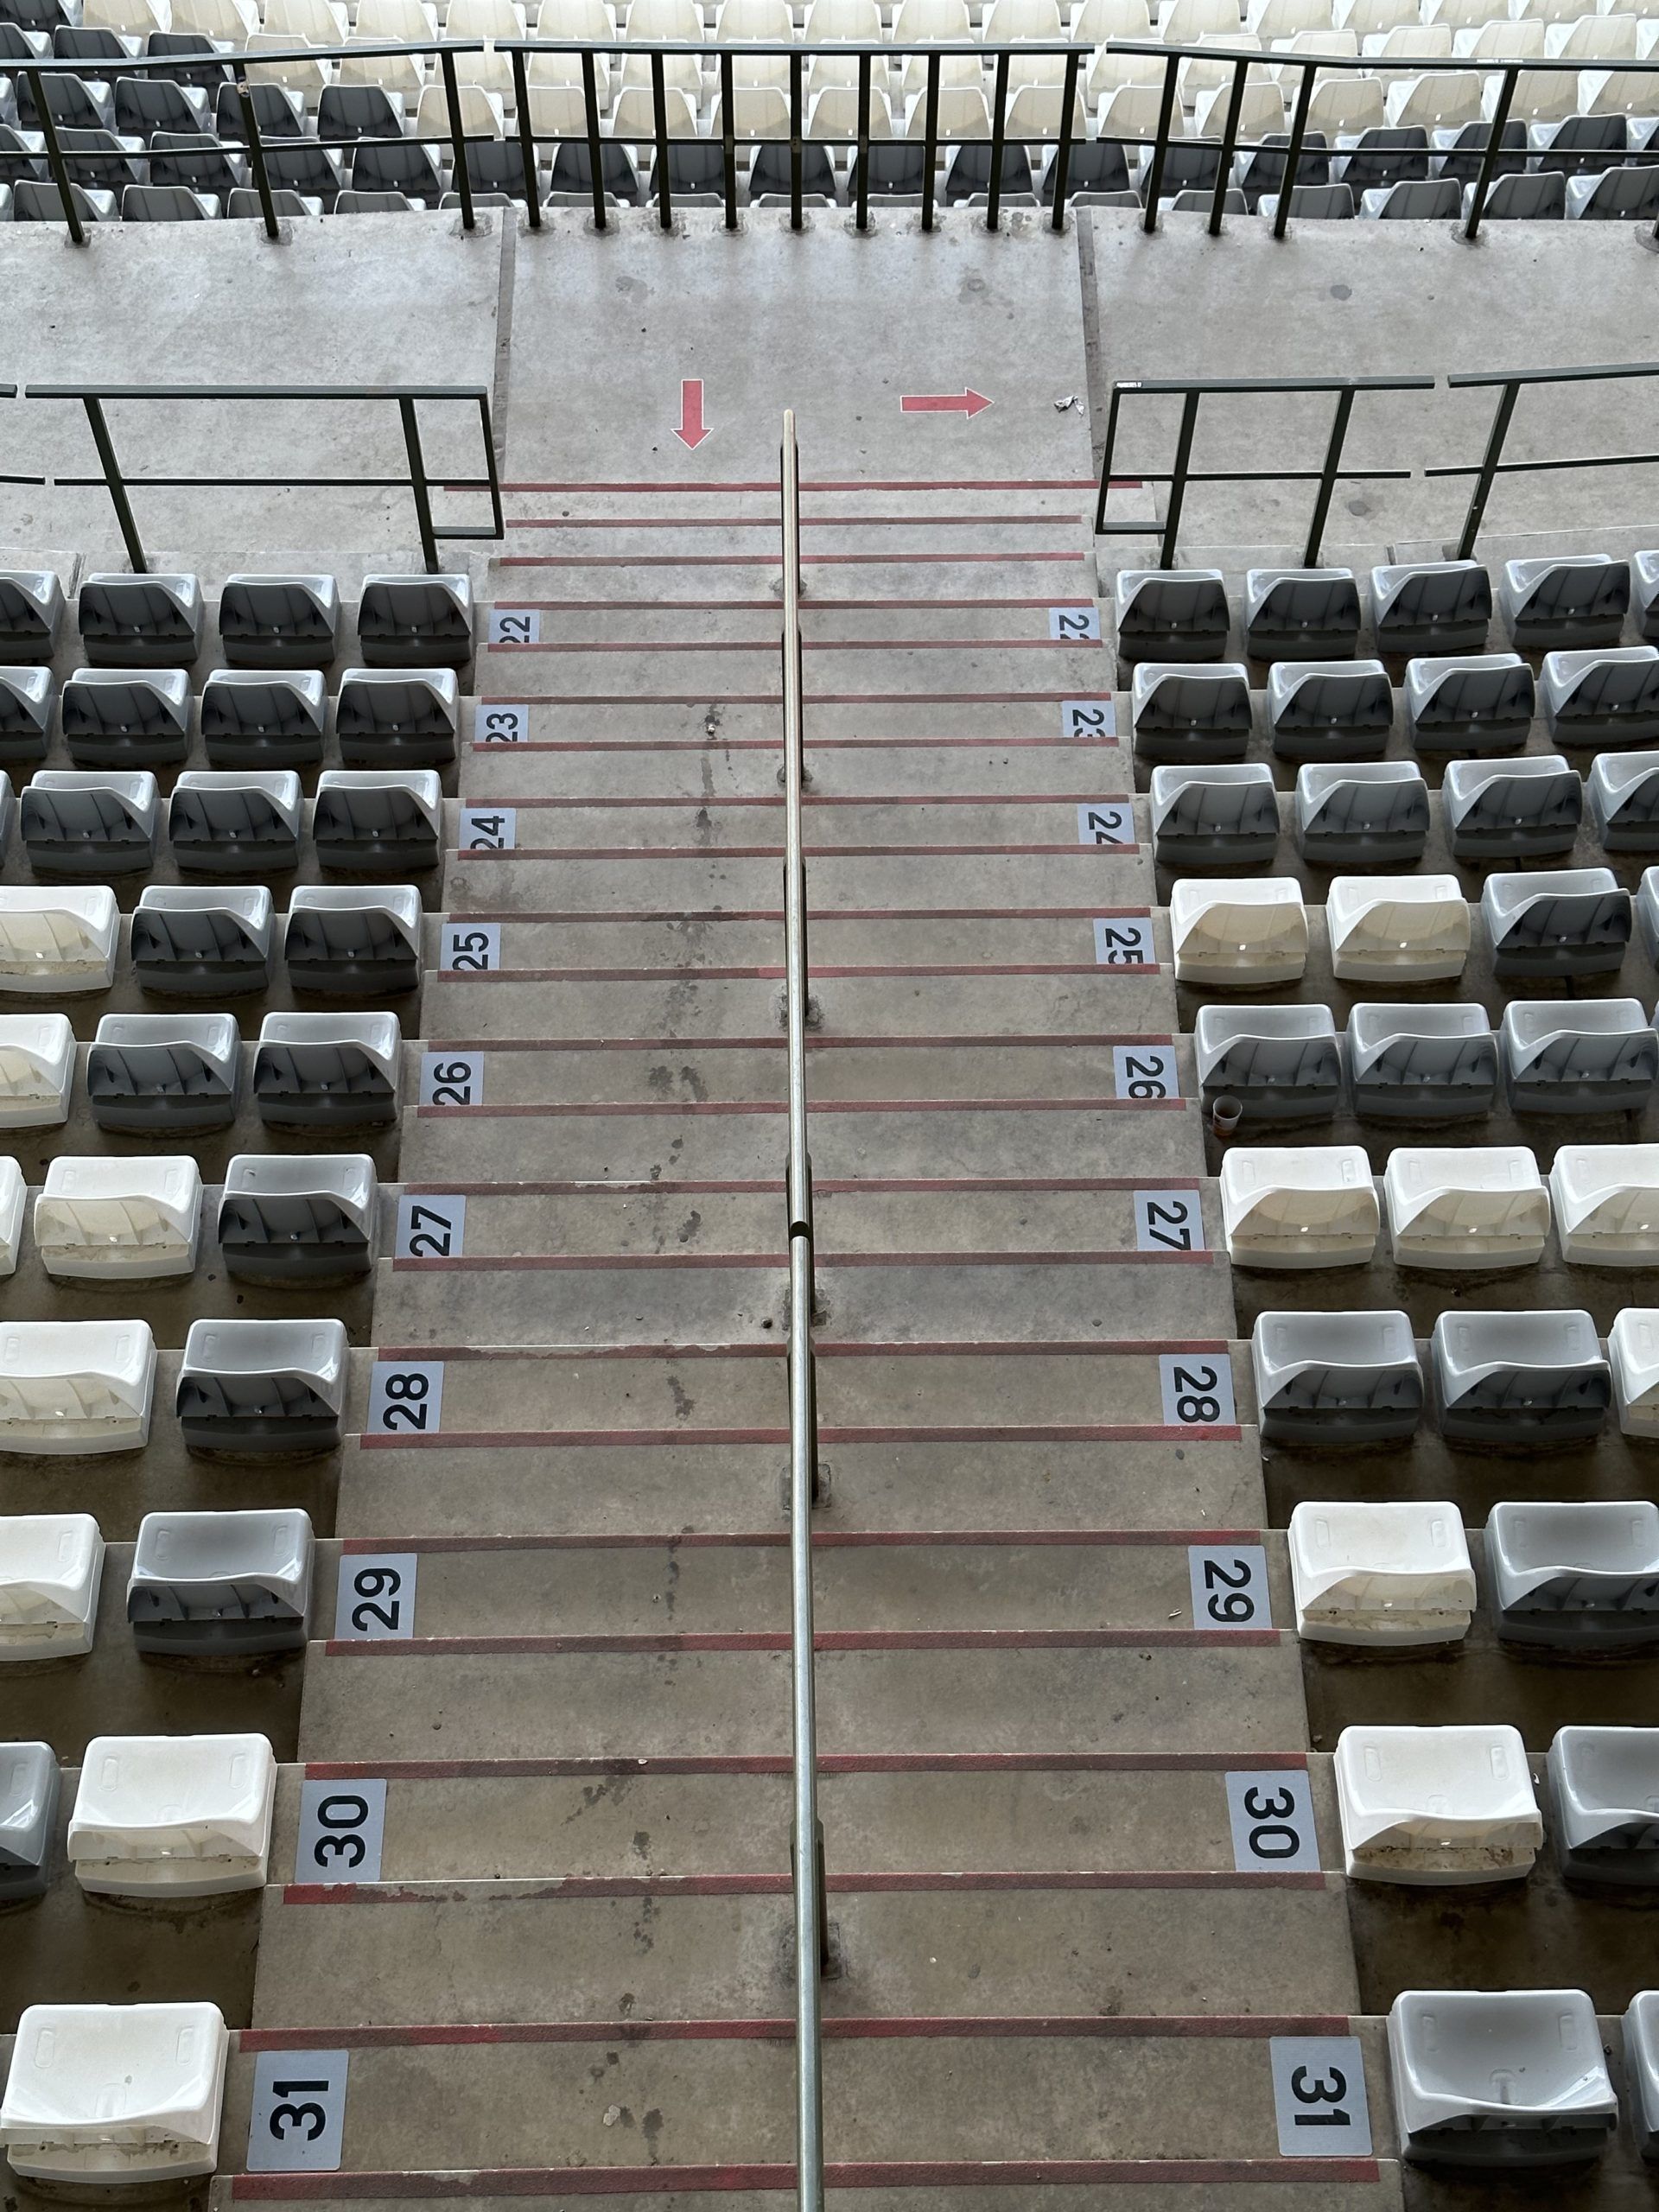 Le Stade Roi Baudouin fait appel à A-csys pour la nouvelle numérotation des sièges